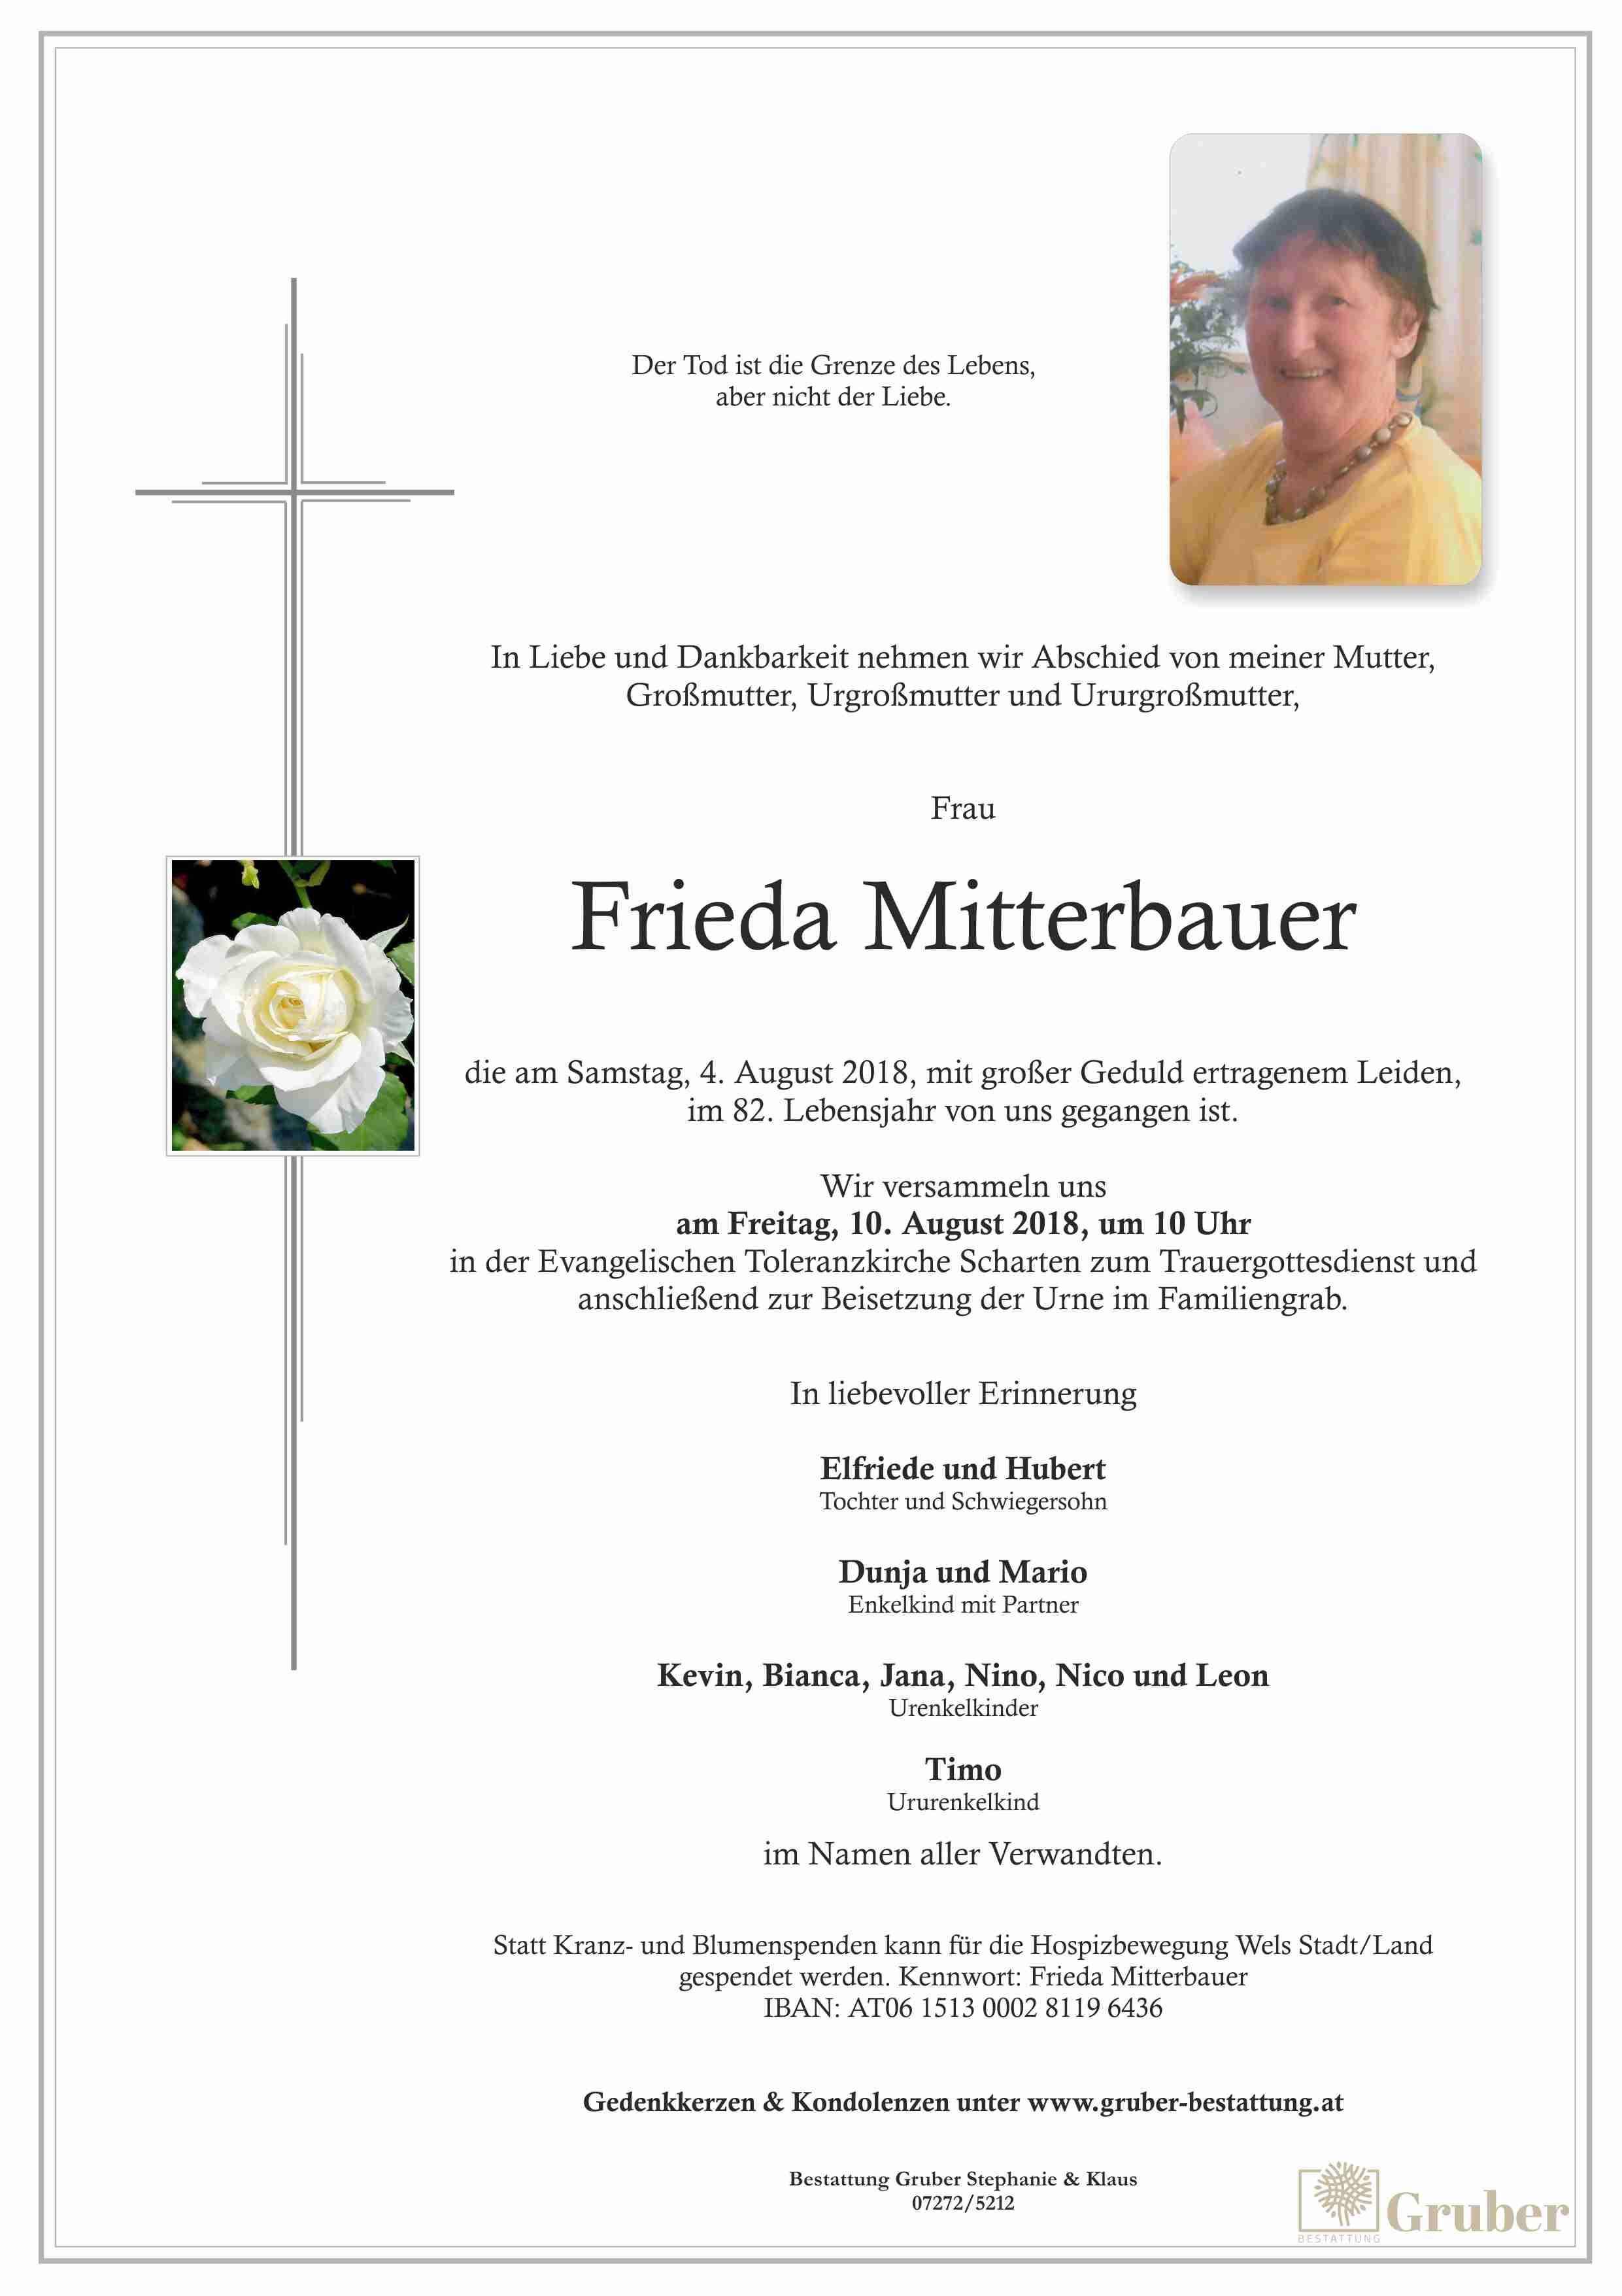 Frieda Mitterbauer (Scharten Evang.)